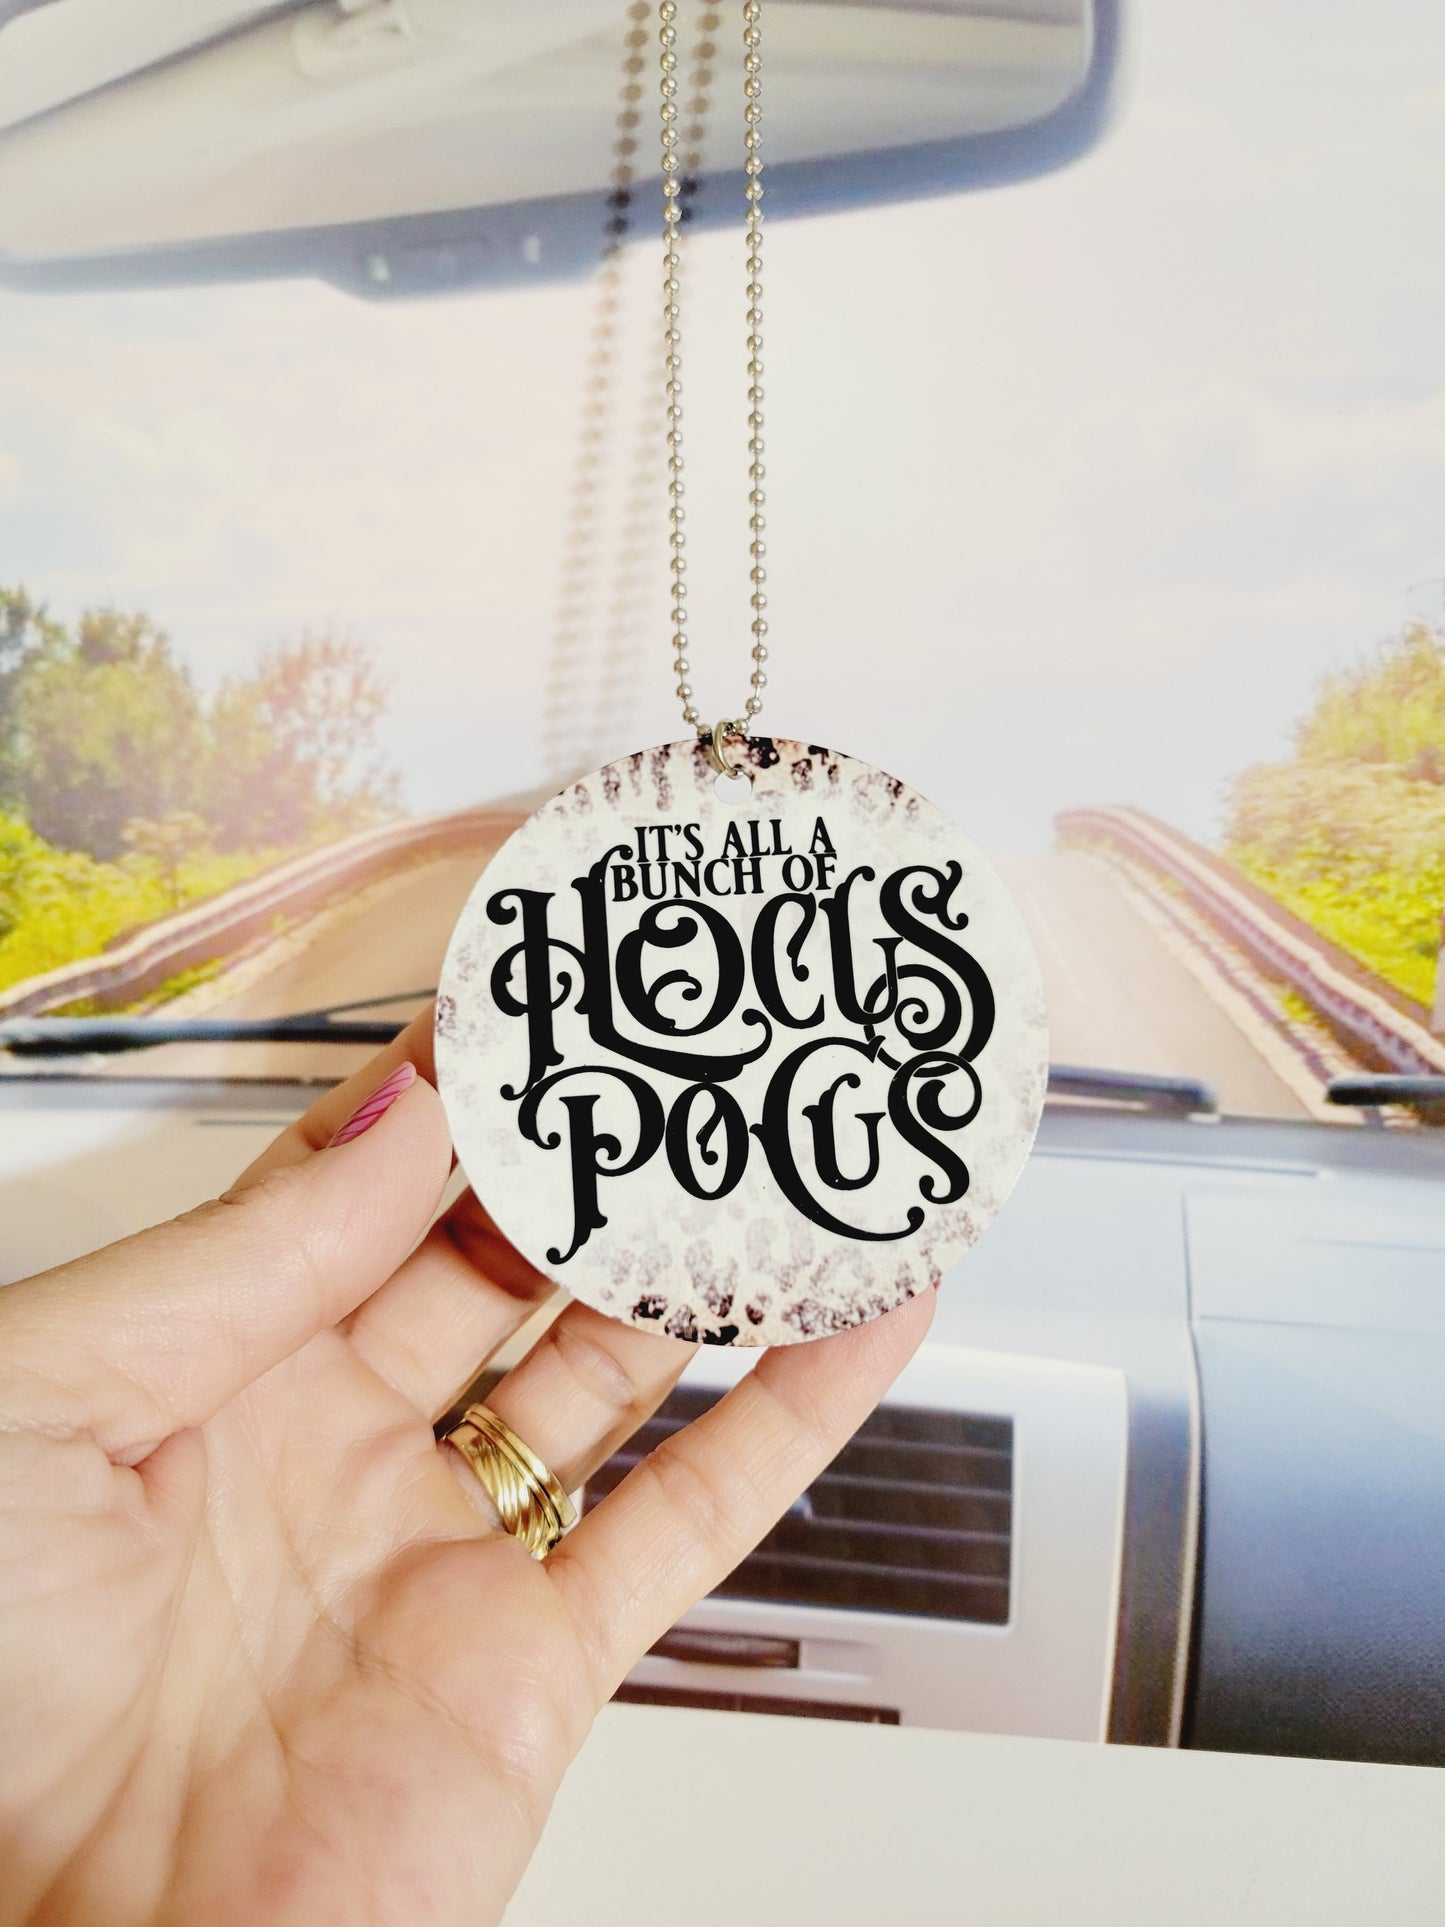 Hocus Pocus rear view mirror charm, car accessory